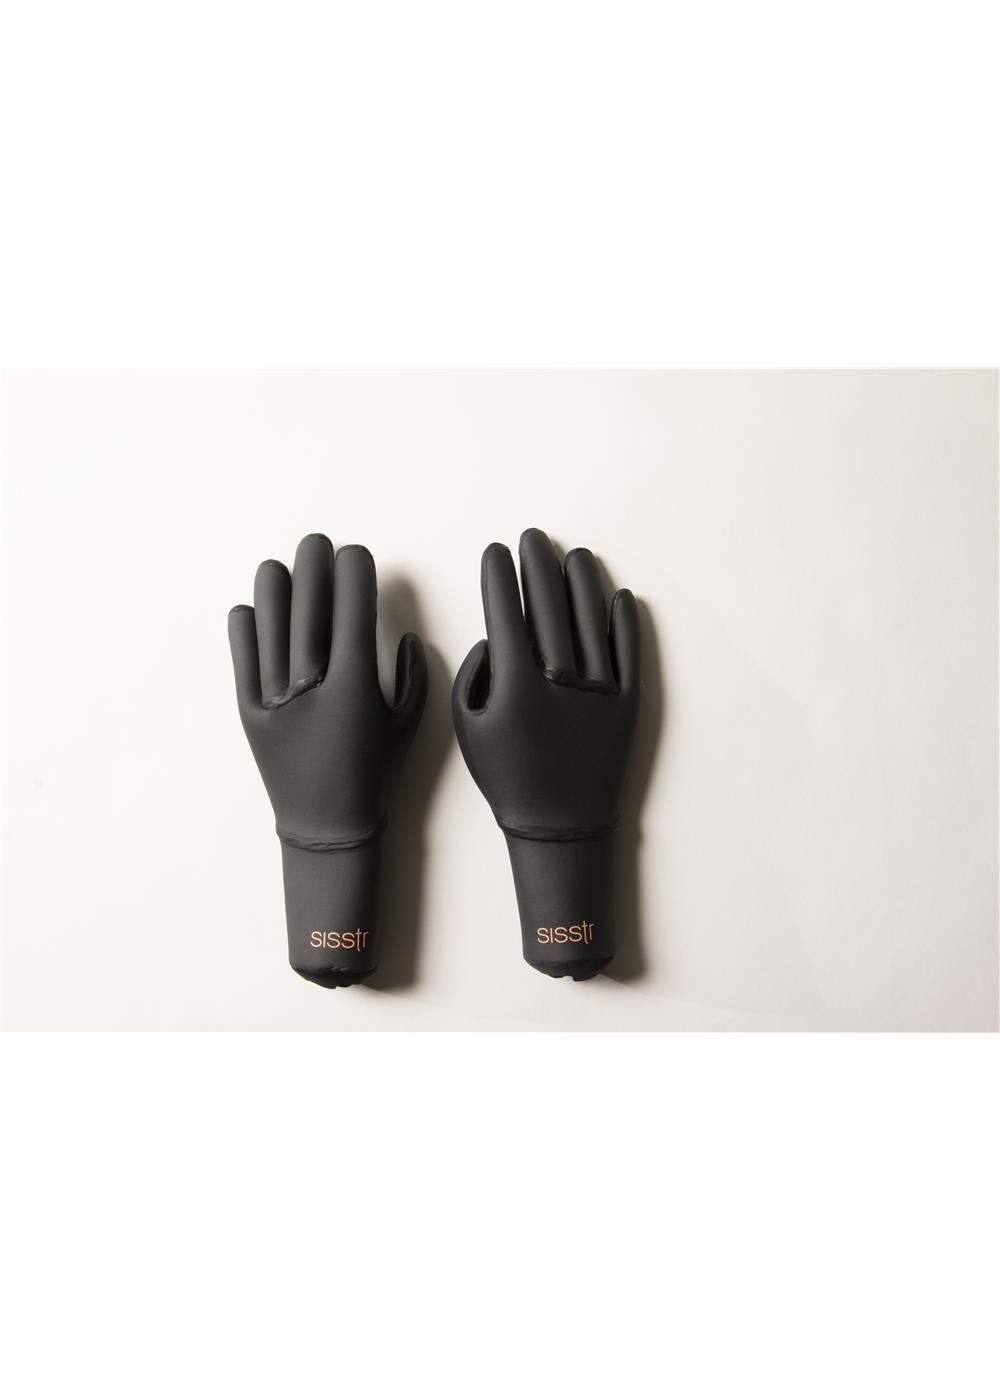 Sisstr 3mm Gloves  Girls Surf Wetsuit Glove – Sisstrevolution